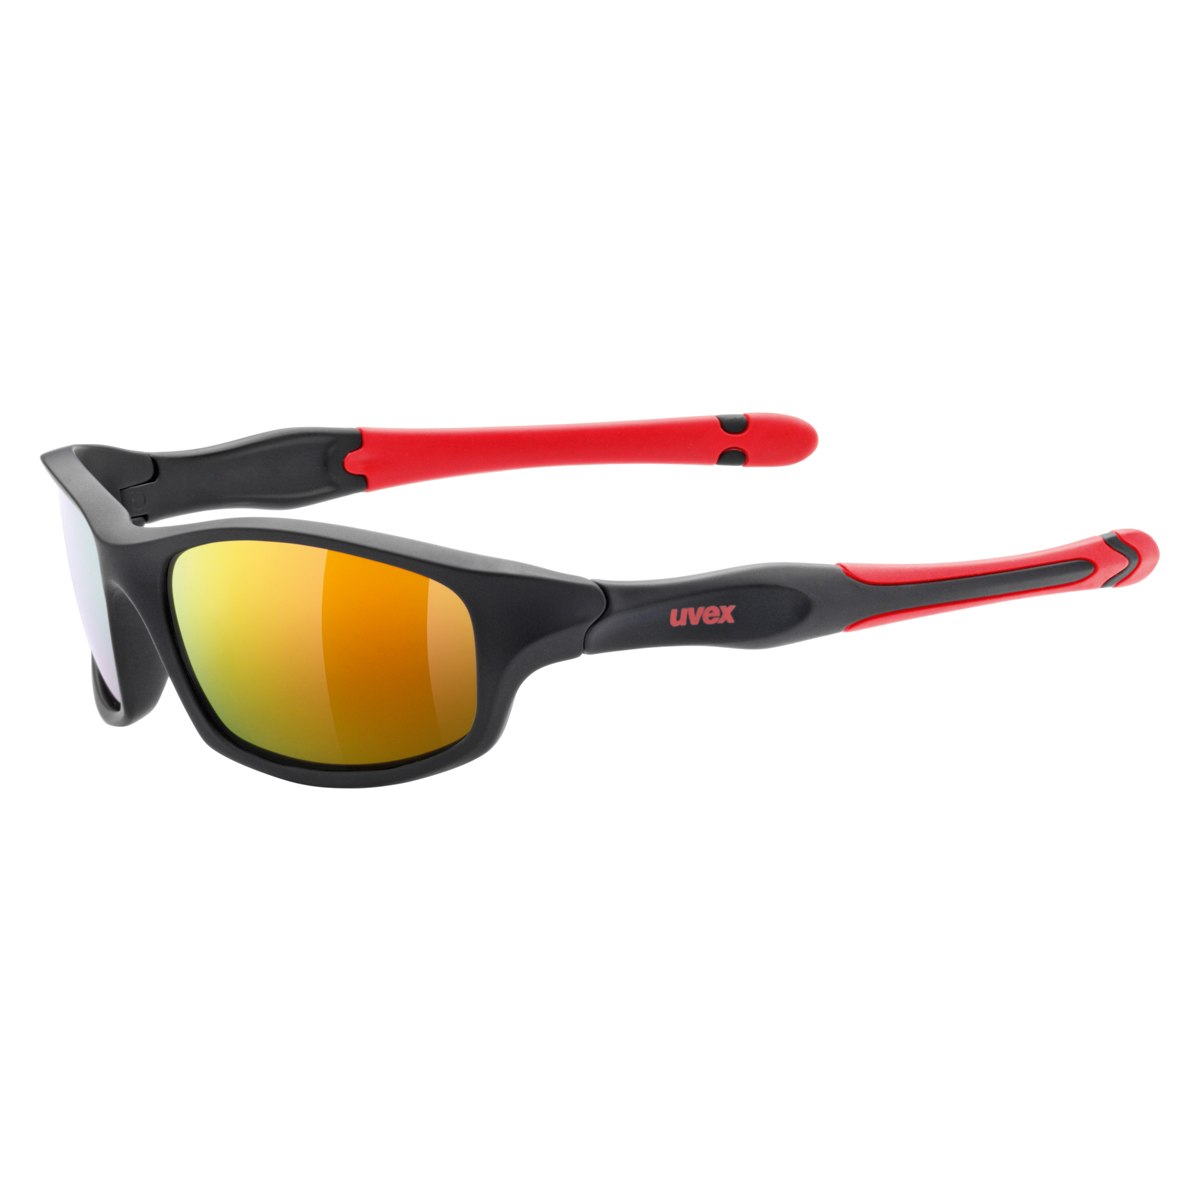 Produktbild von Uvex sportstyle 507 Kinderbrille - black mat red/mirror red